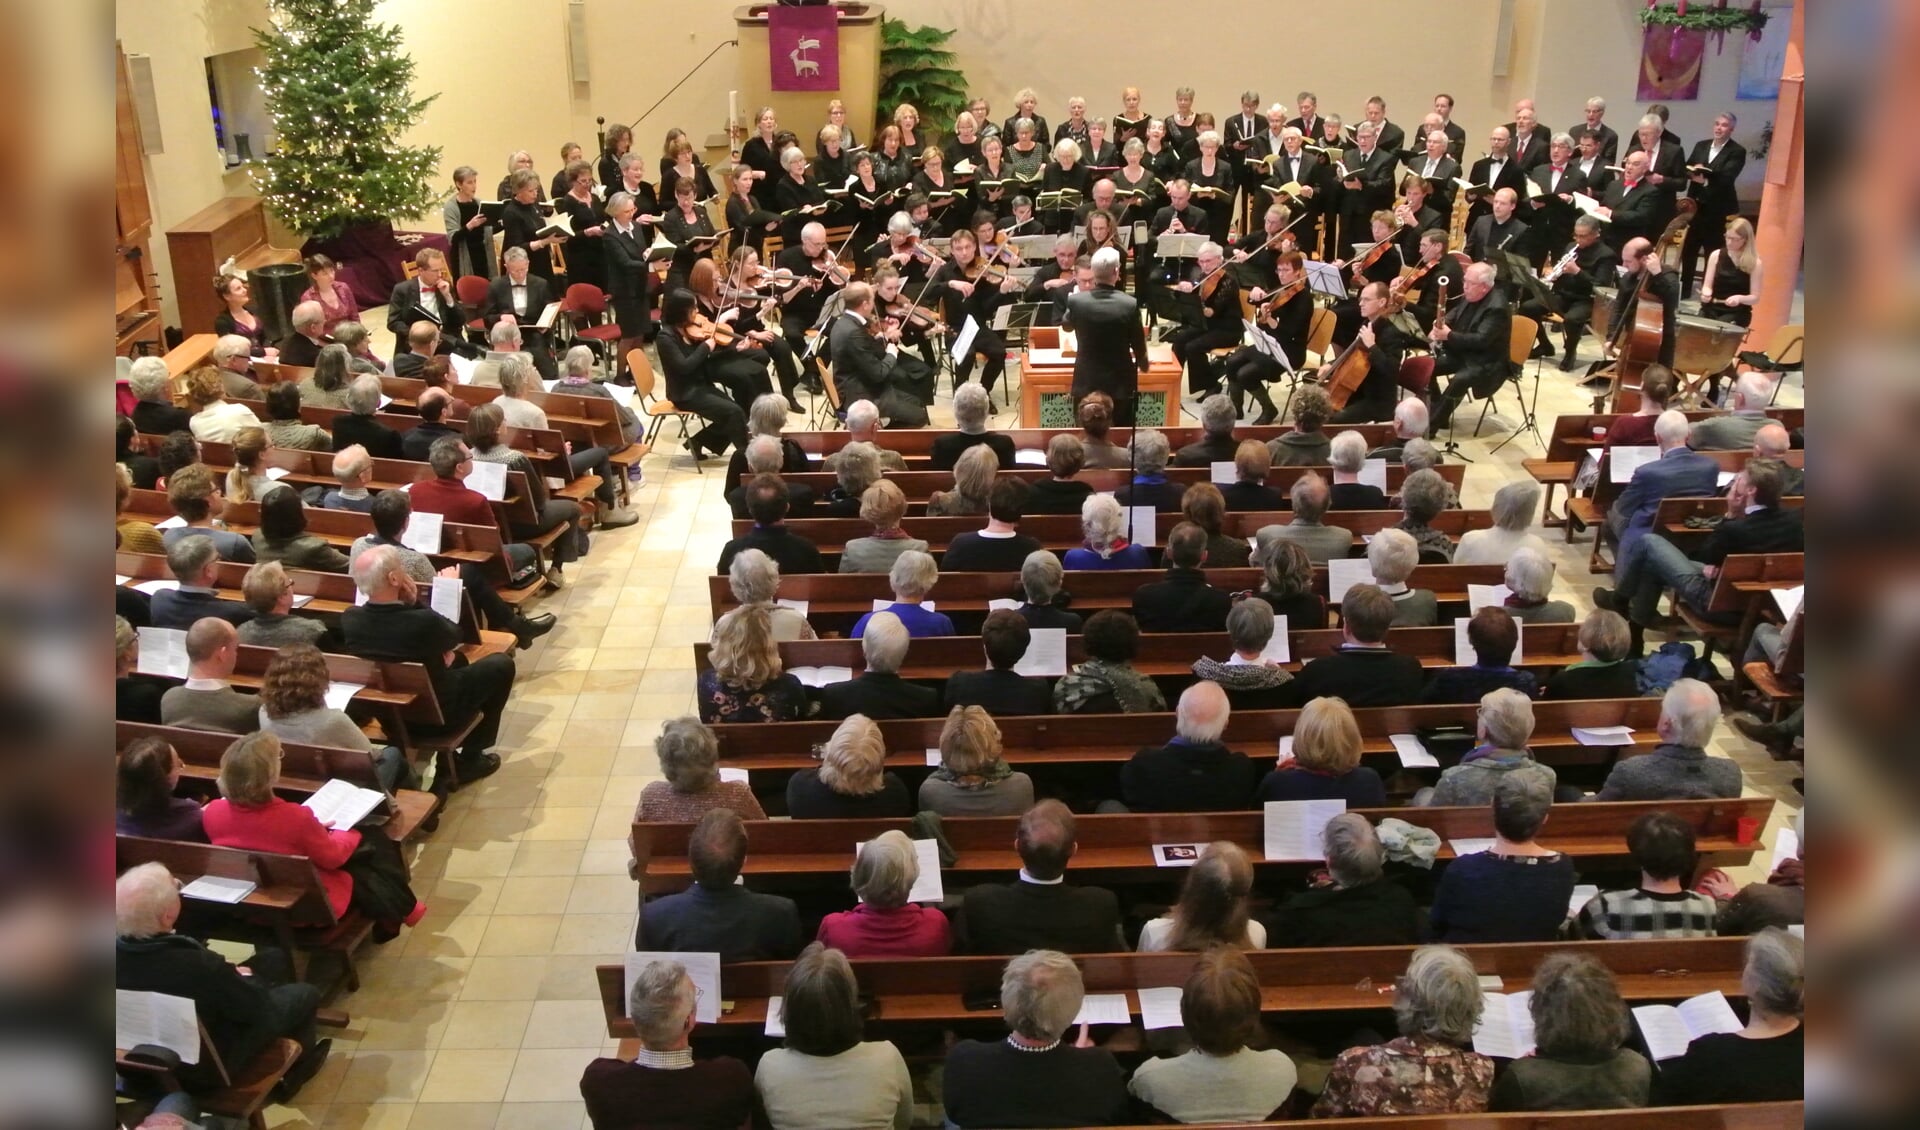  Het koor, orkest en solisten in een volle kerk 